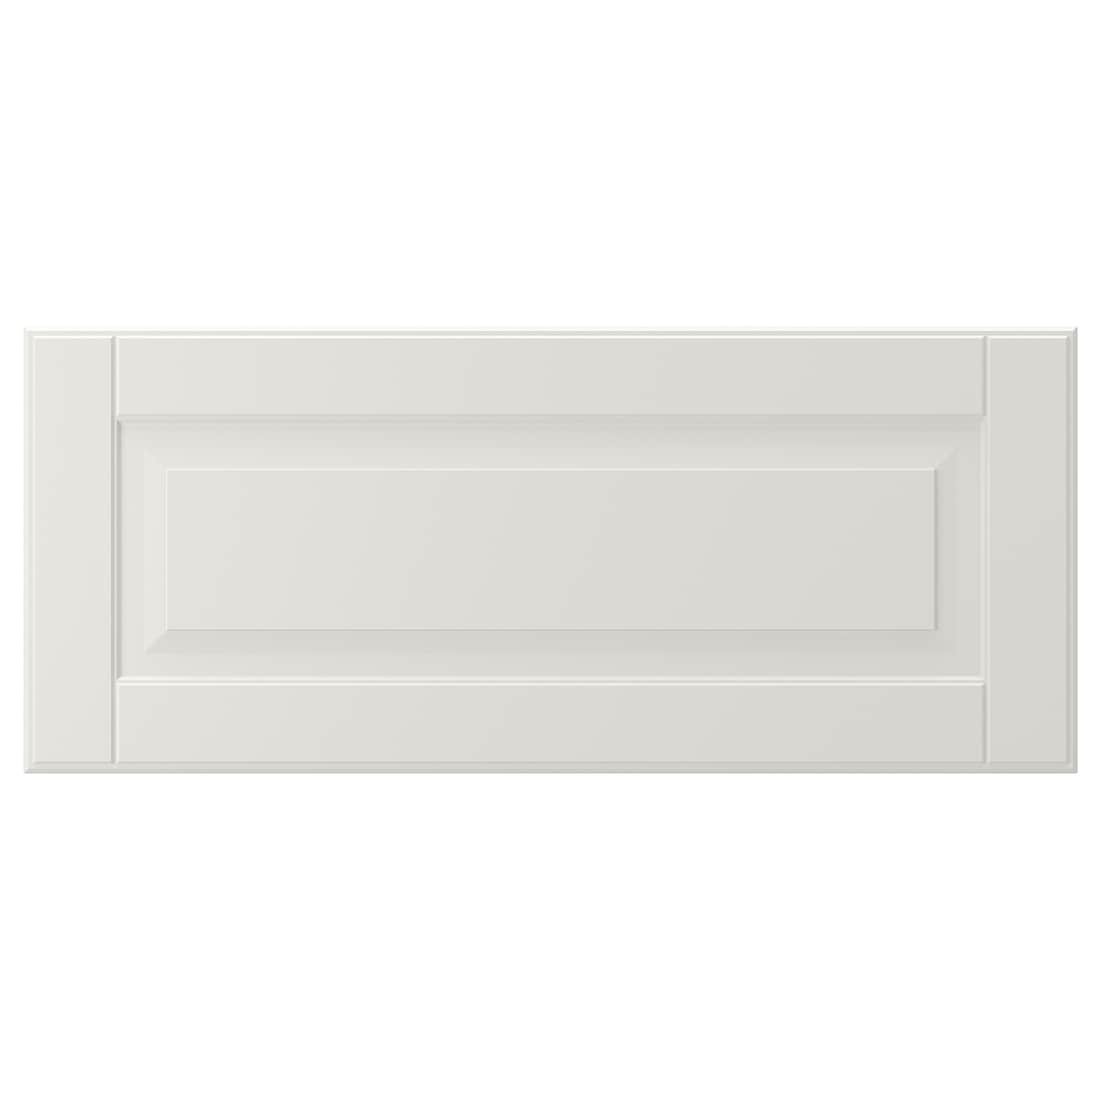 IKEA SMEVIKEN СМЕВИКЕН Фронтальная панель ящика, белый, 60x26 см 60472879 604.728.79